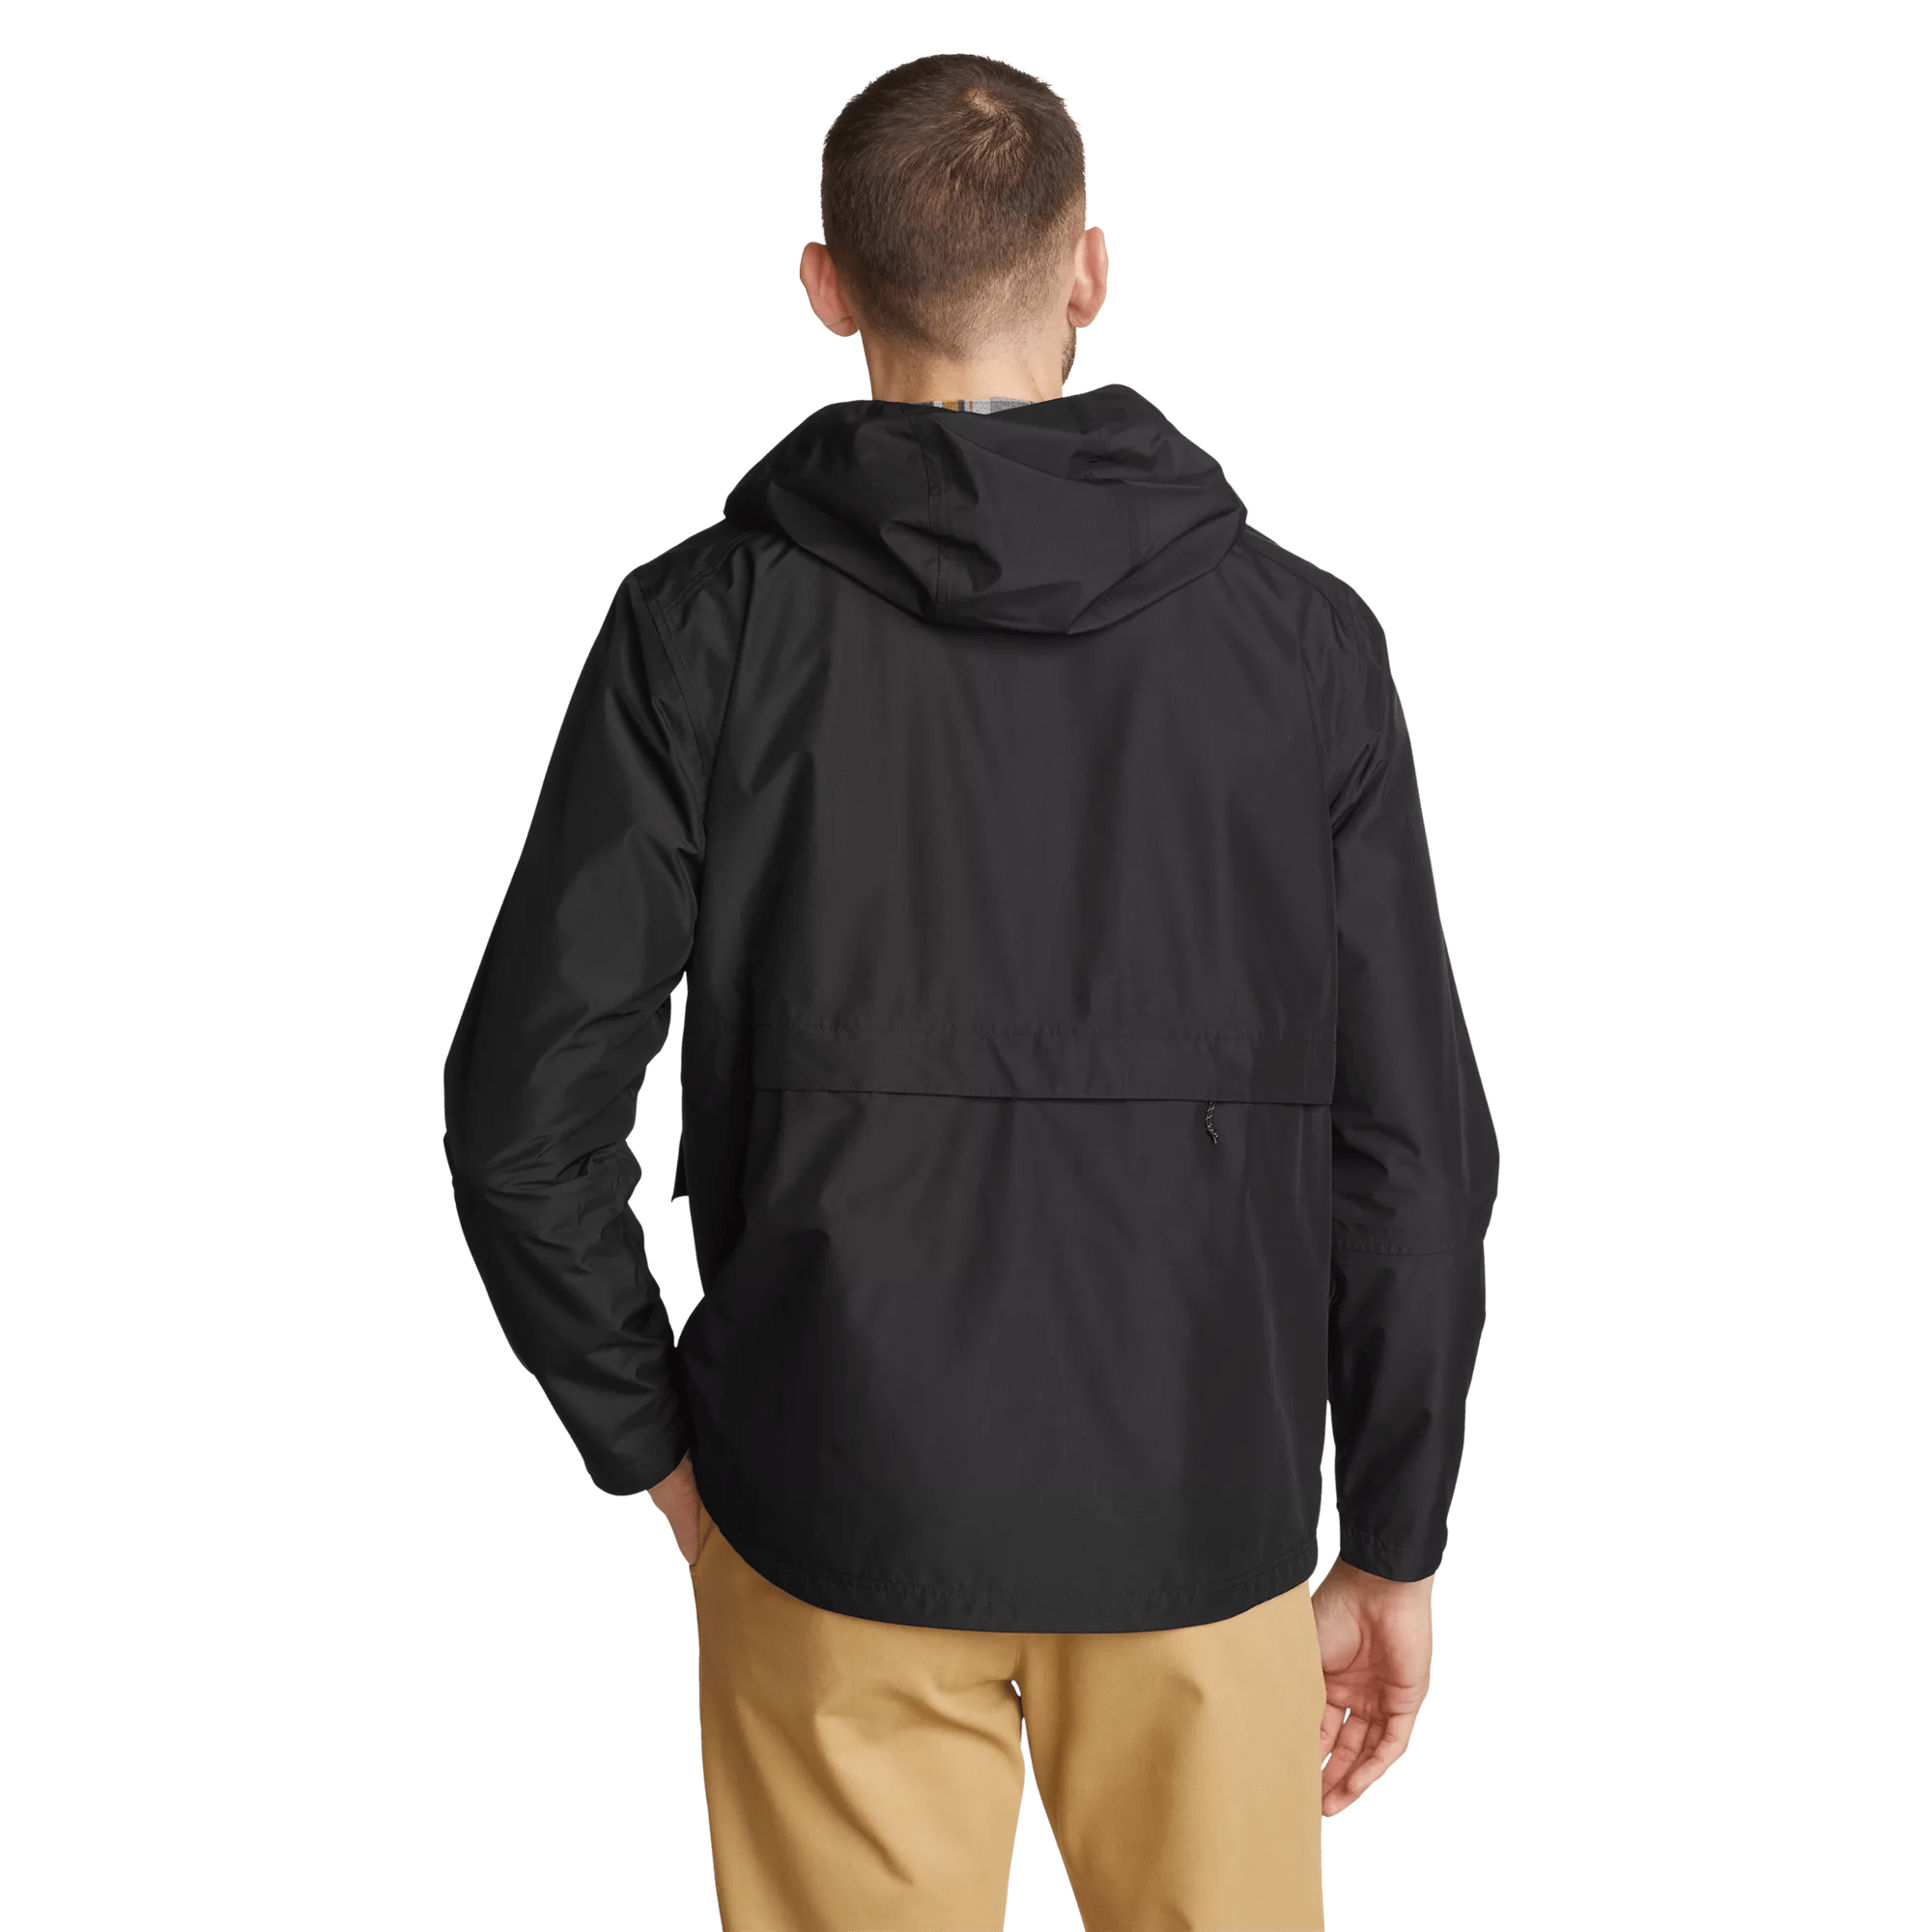 RainPac Jacket